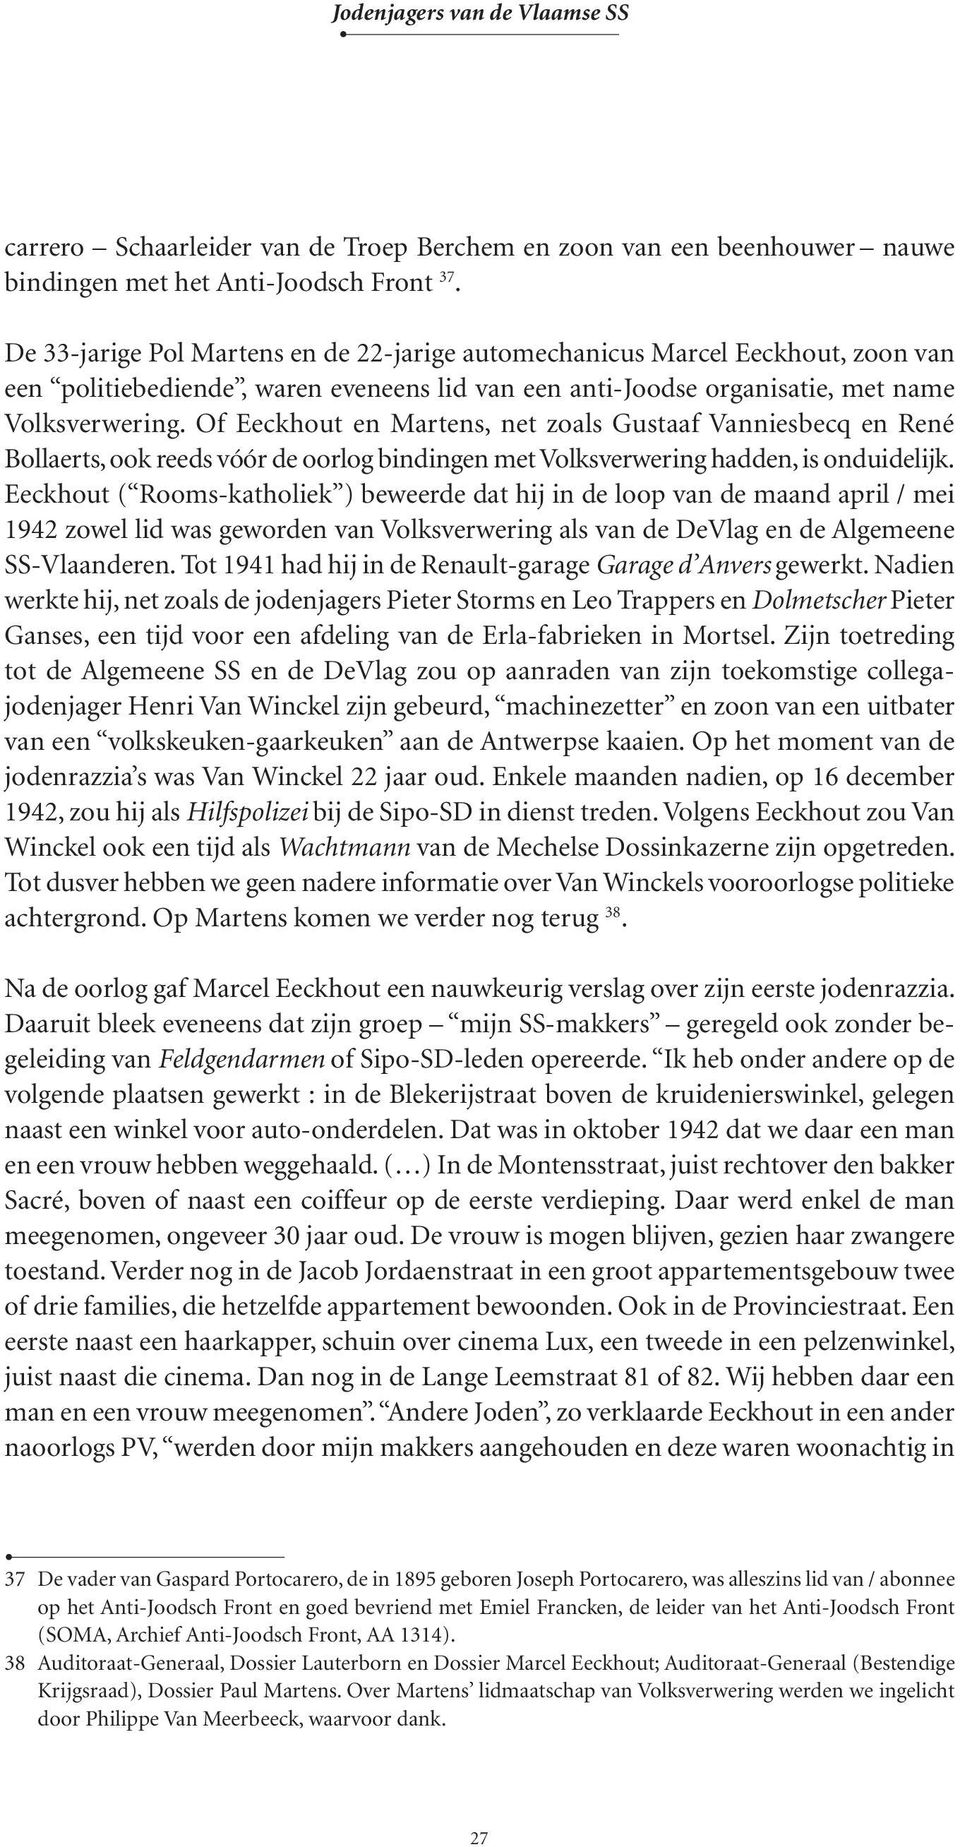 Of Eeckhout en Martens, net zoals Gustaaf Vanniesbecq en René Bollaerts, ook reeds vóór de oorlog bindingen met Volksverwering hadden, is onduidelijk.